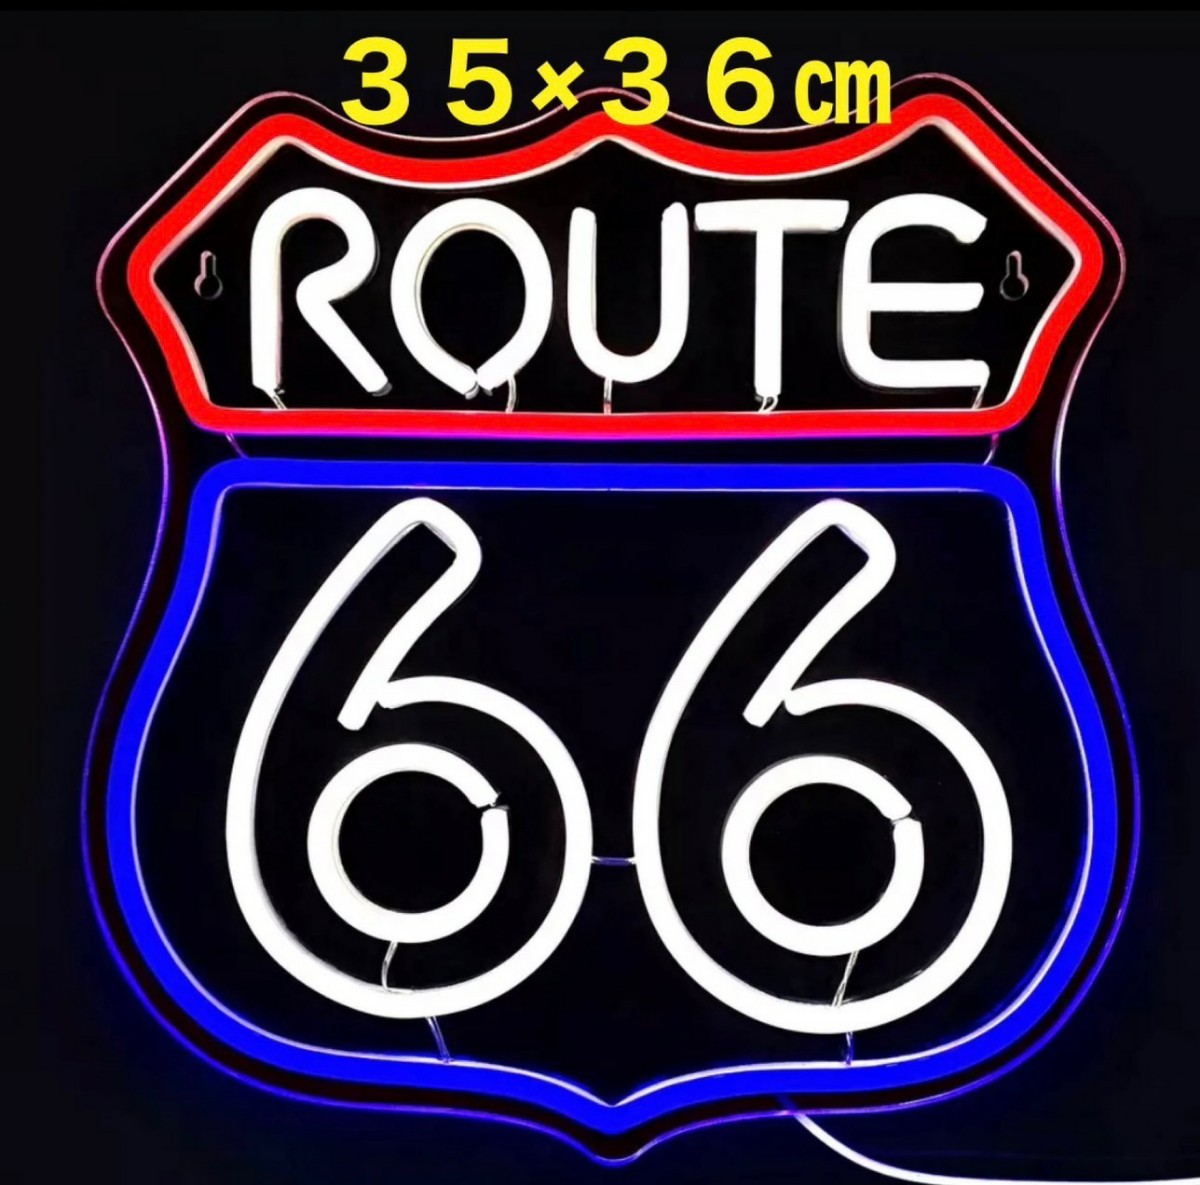 ルート66 ROUTE66 LED ライト 看板 ネオンサイン ネオンライト ネオンチューブ ネオン管 サイン看板 ガレージ雑貨 車 バイク ハーレー